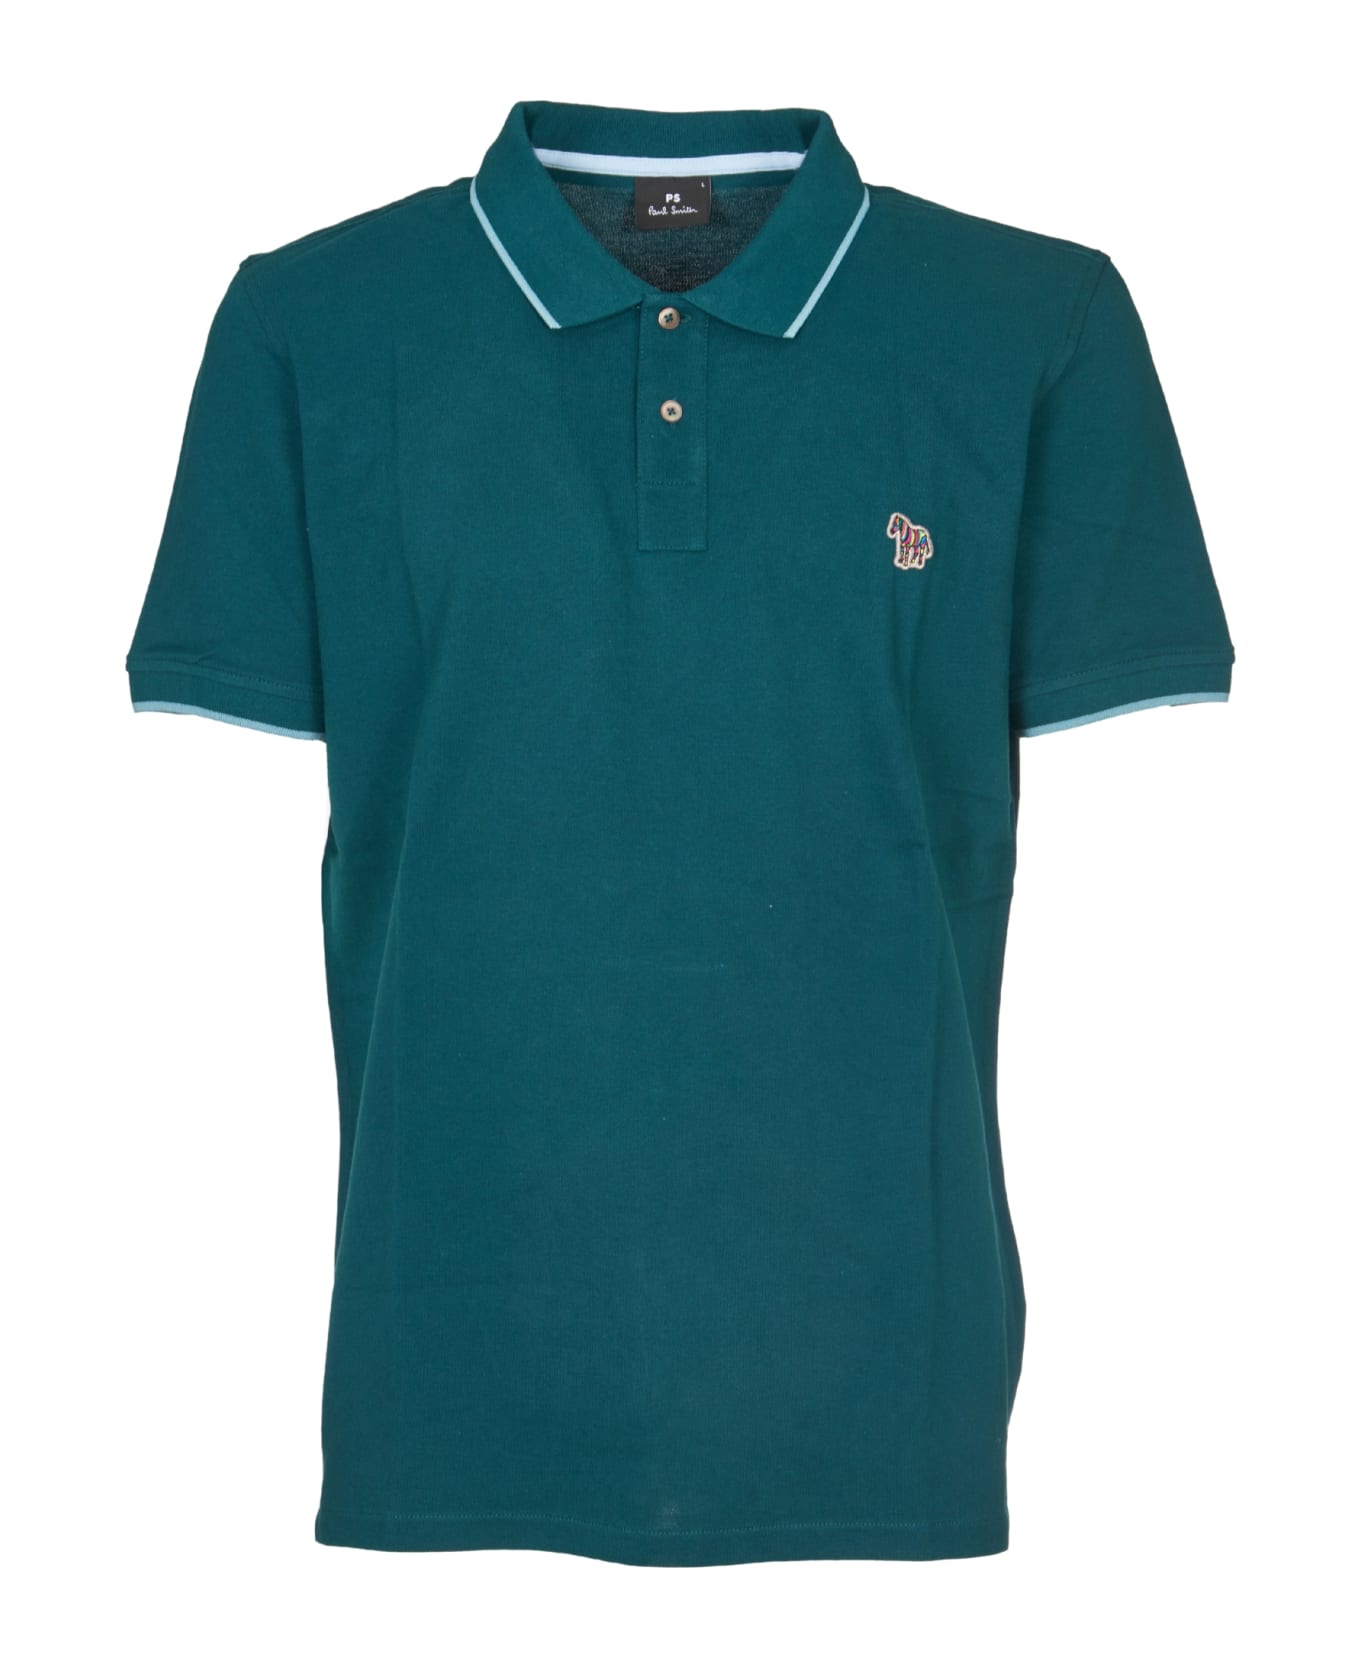 Paul Smith Polo Shirt - Green